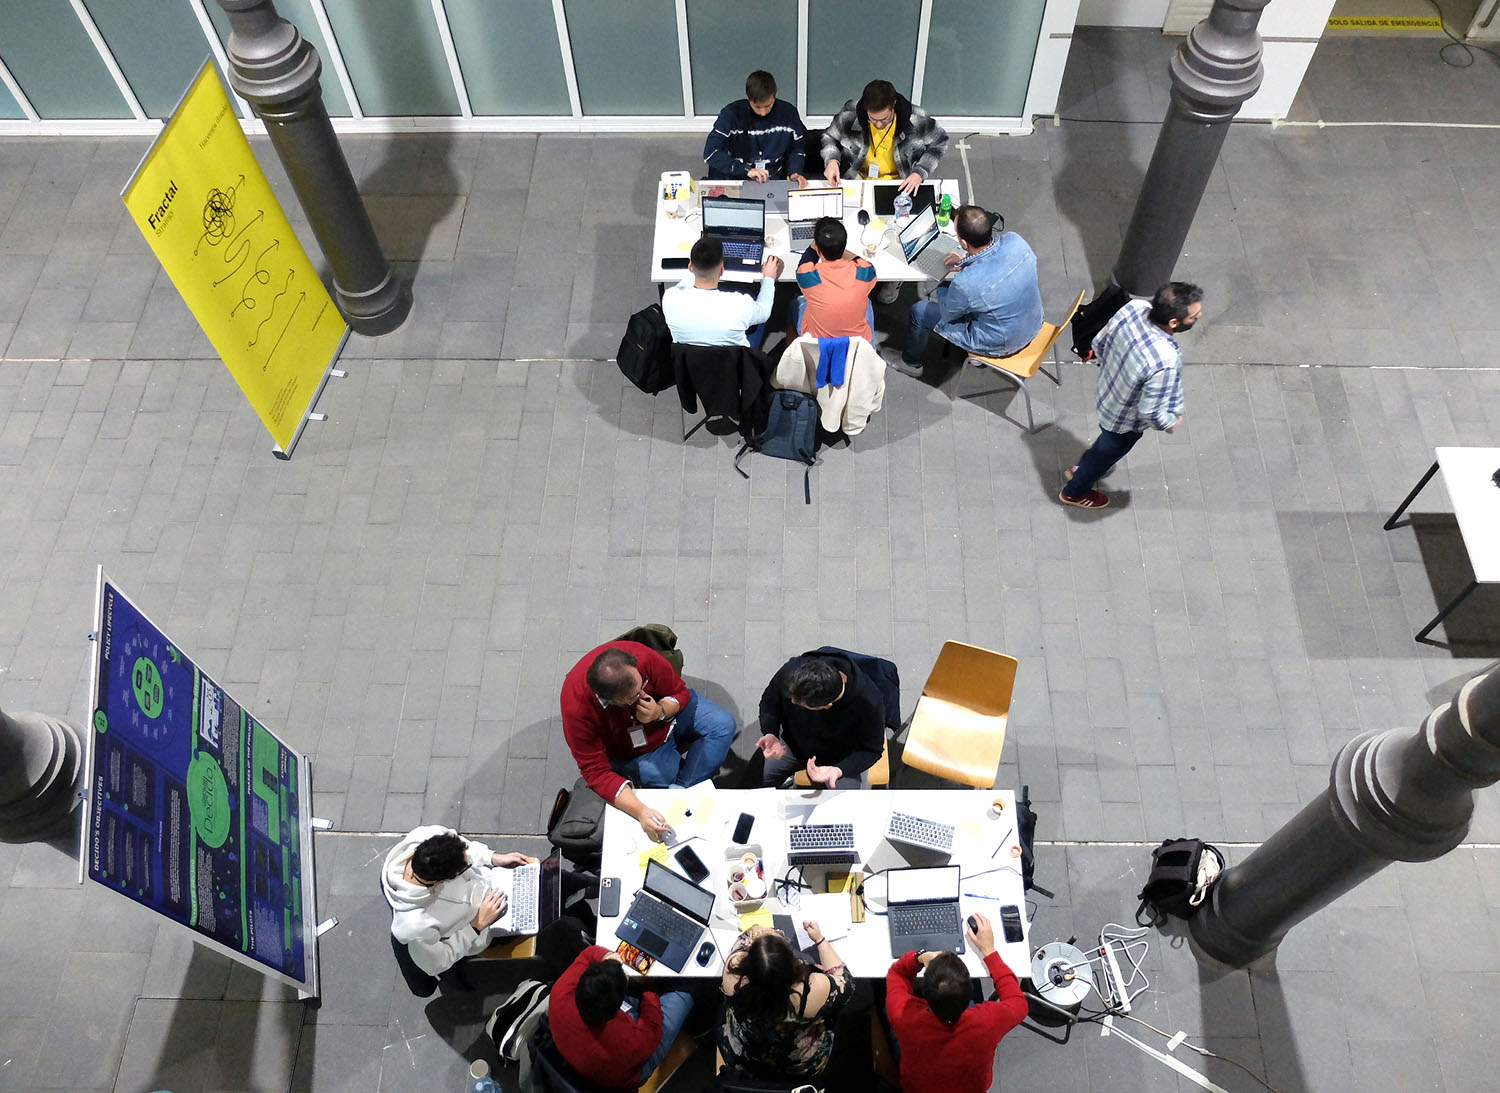 Vista cenital de dos grupos de personas trabajando en torno a sendas mesas, con sus ordenadores